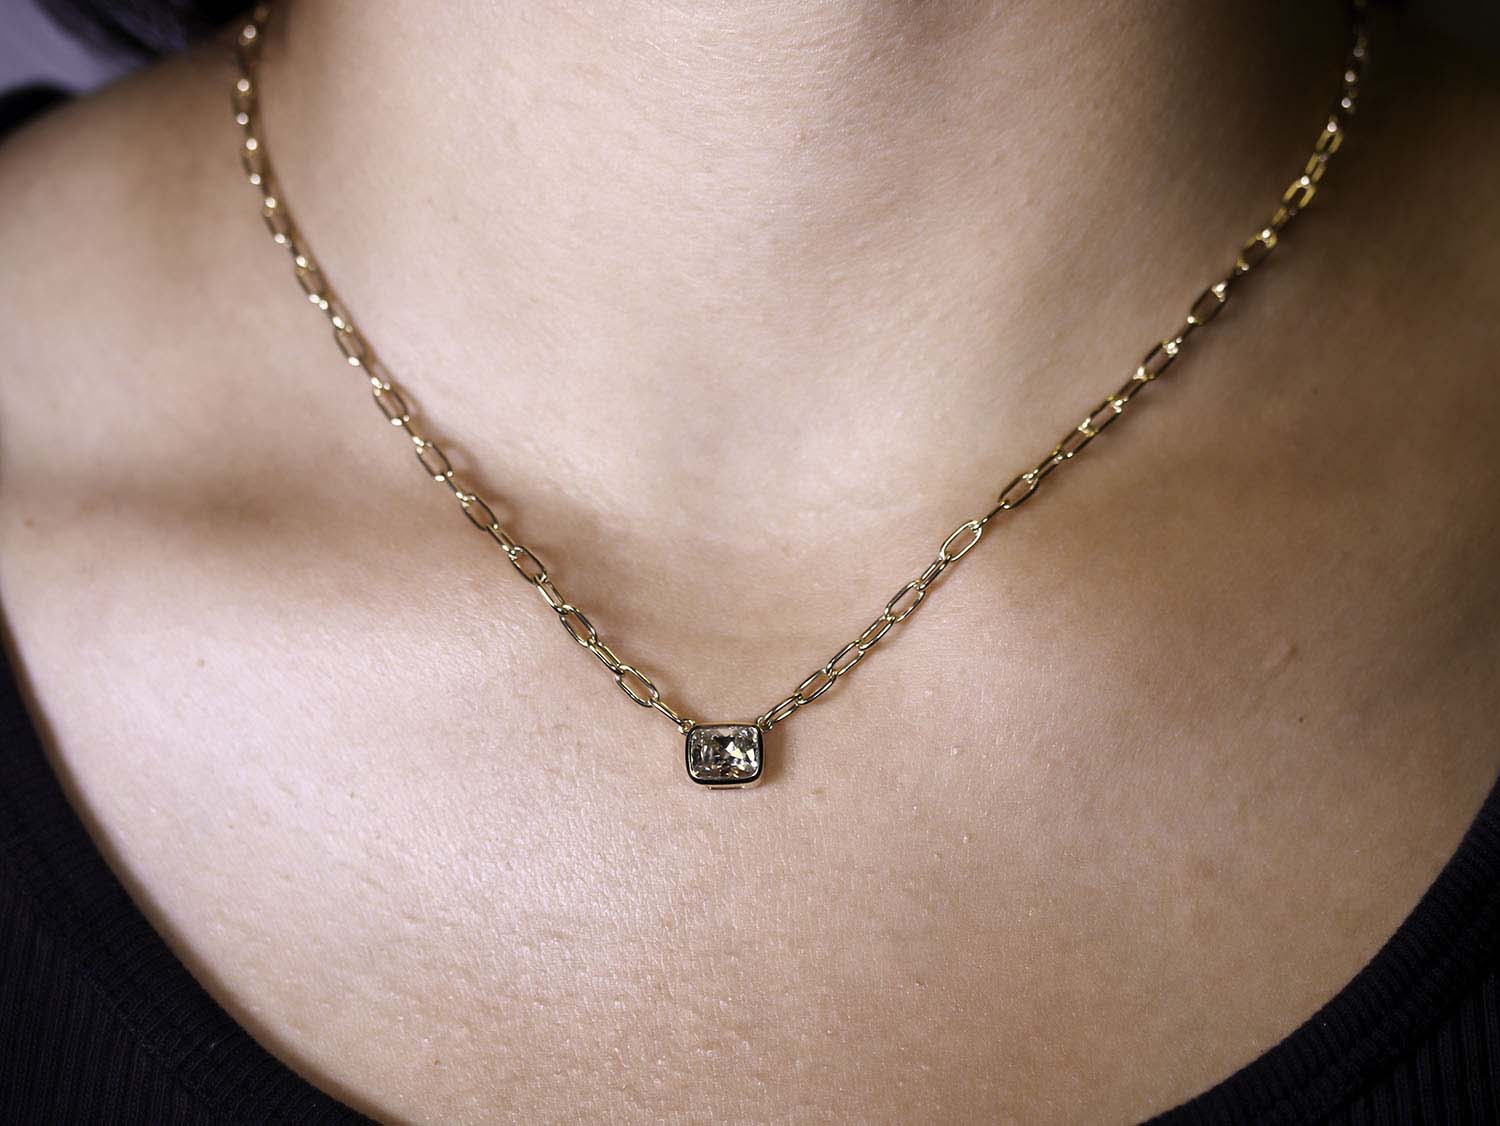 Antique Cushion Cut Diamond Pendant Necklace